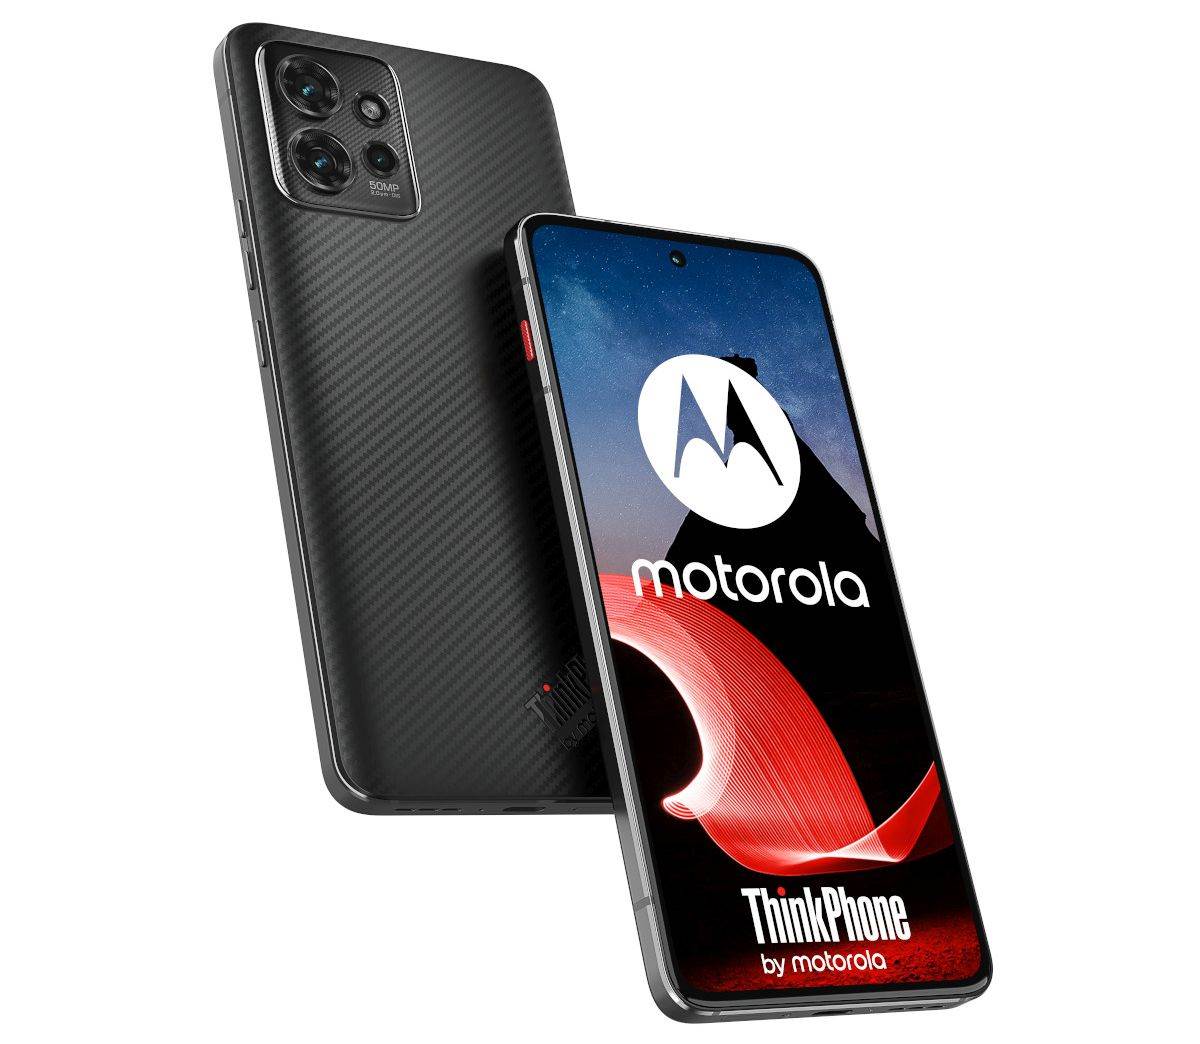  Lenovo ThinkPhone by Motorola (1).jpg 